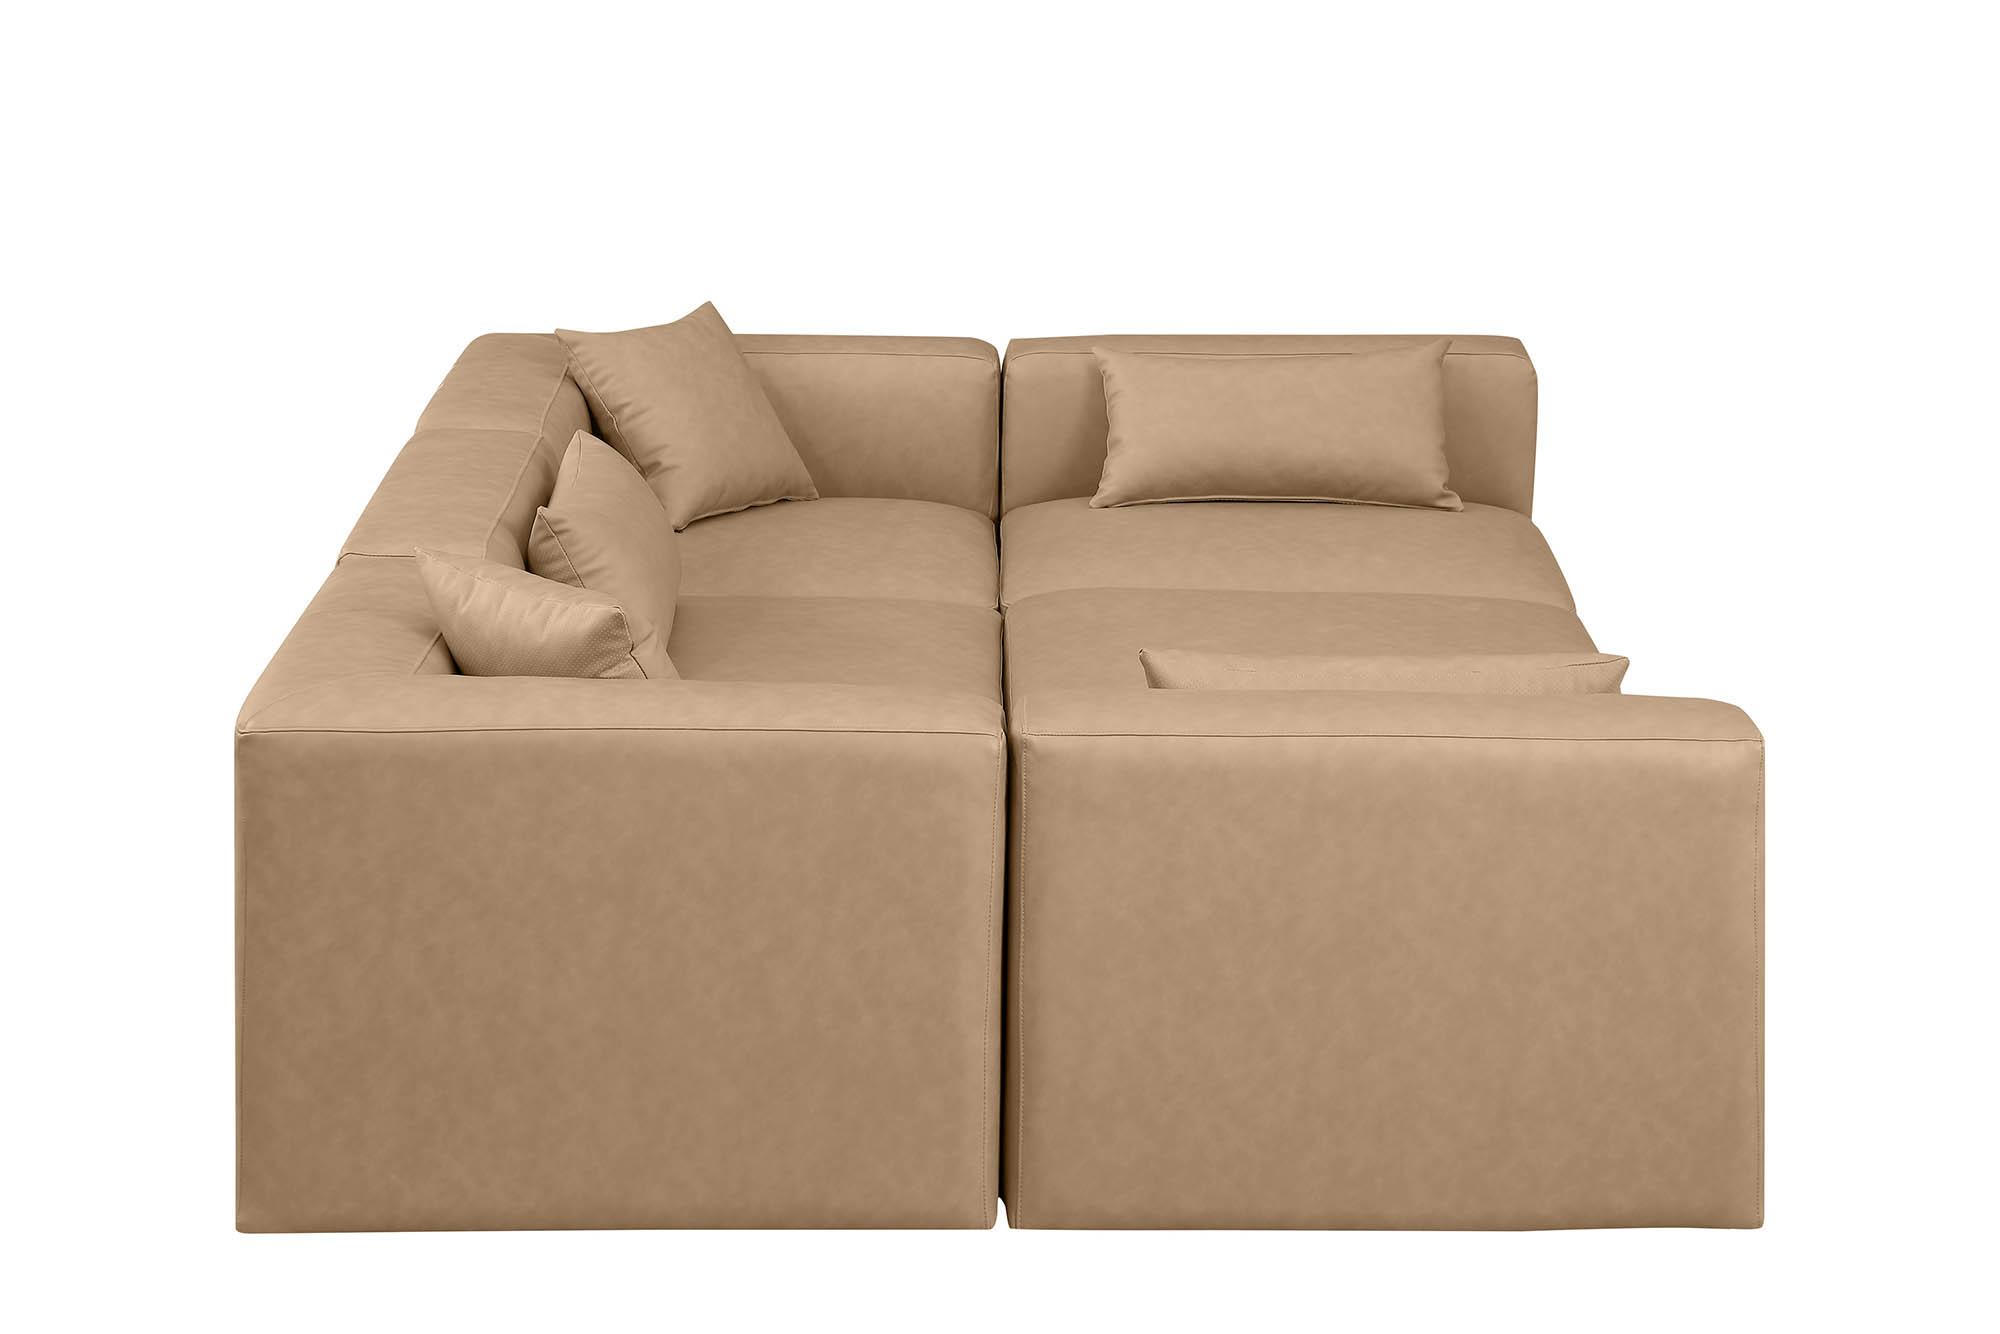 

    
Meridian Furniture CUBE 668Tan-Sec6C Modular Sectional Sofa Tan 668Tan-Sec6C
